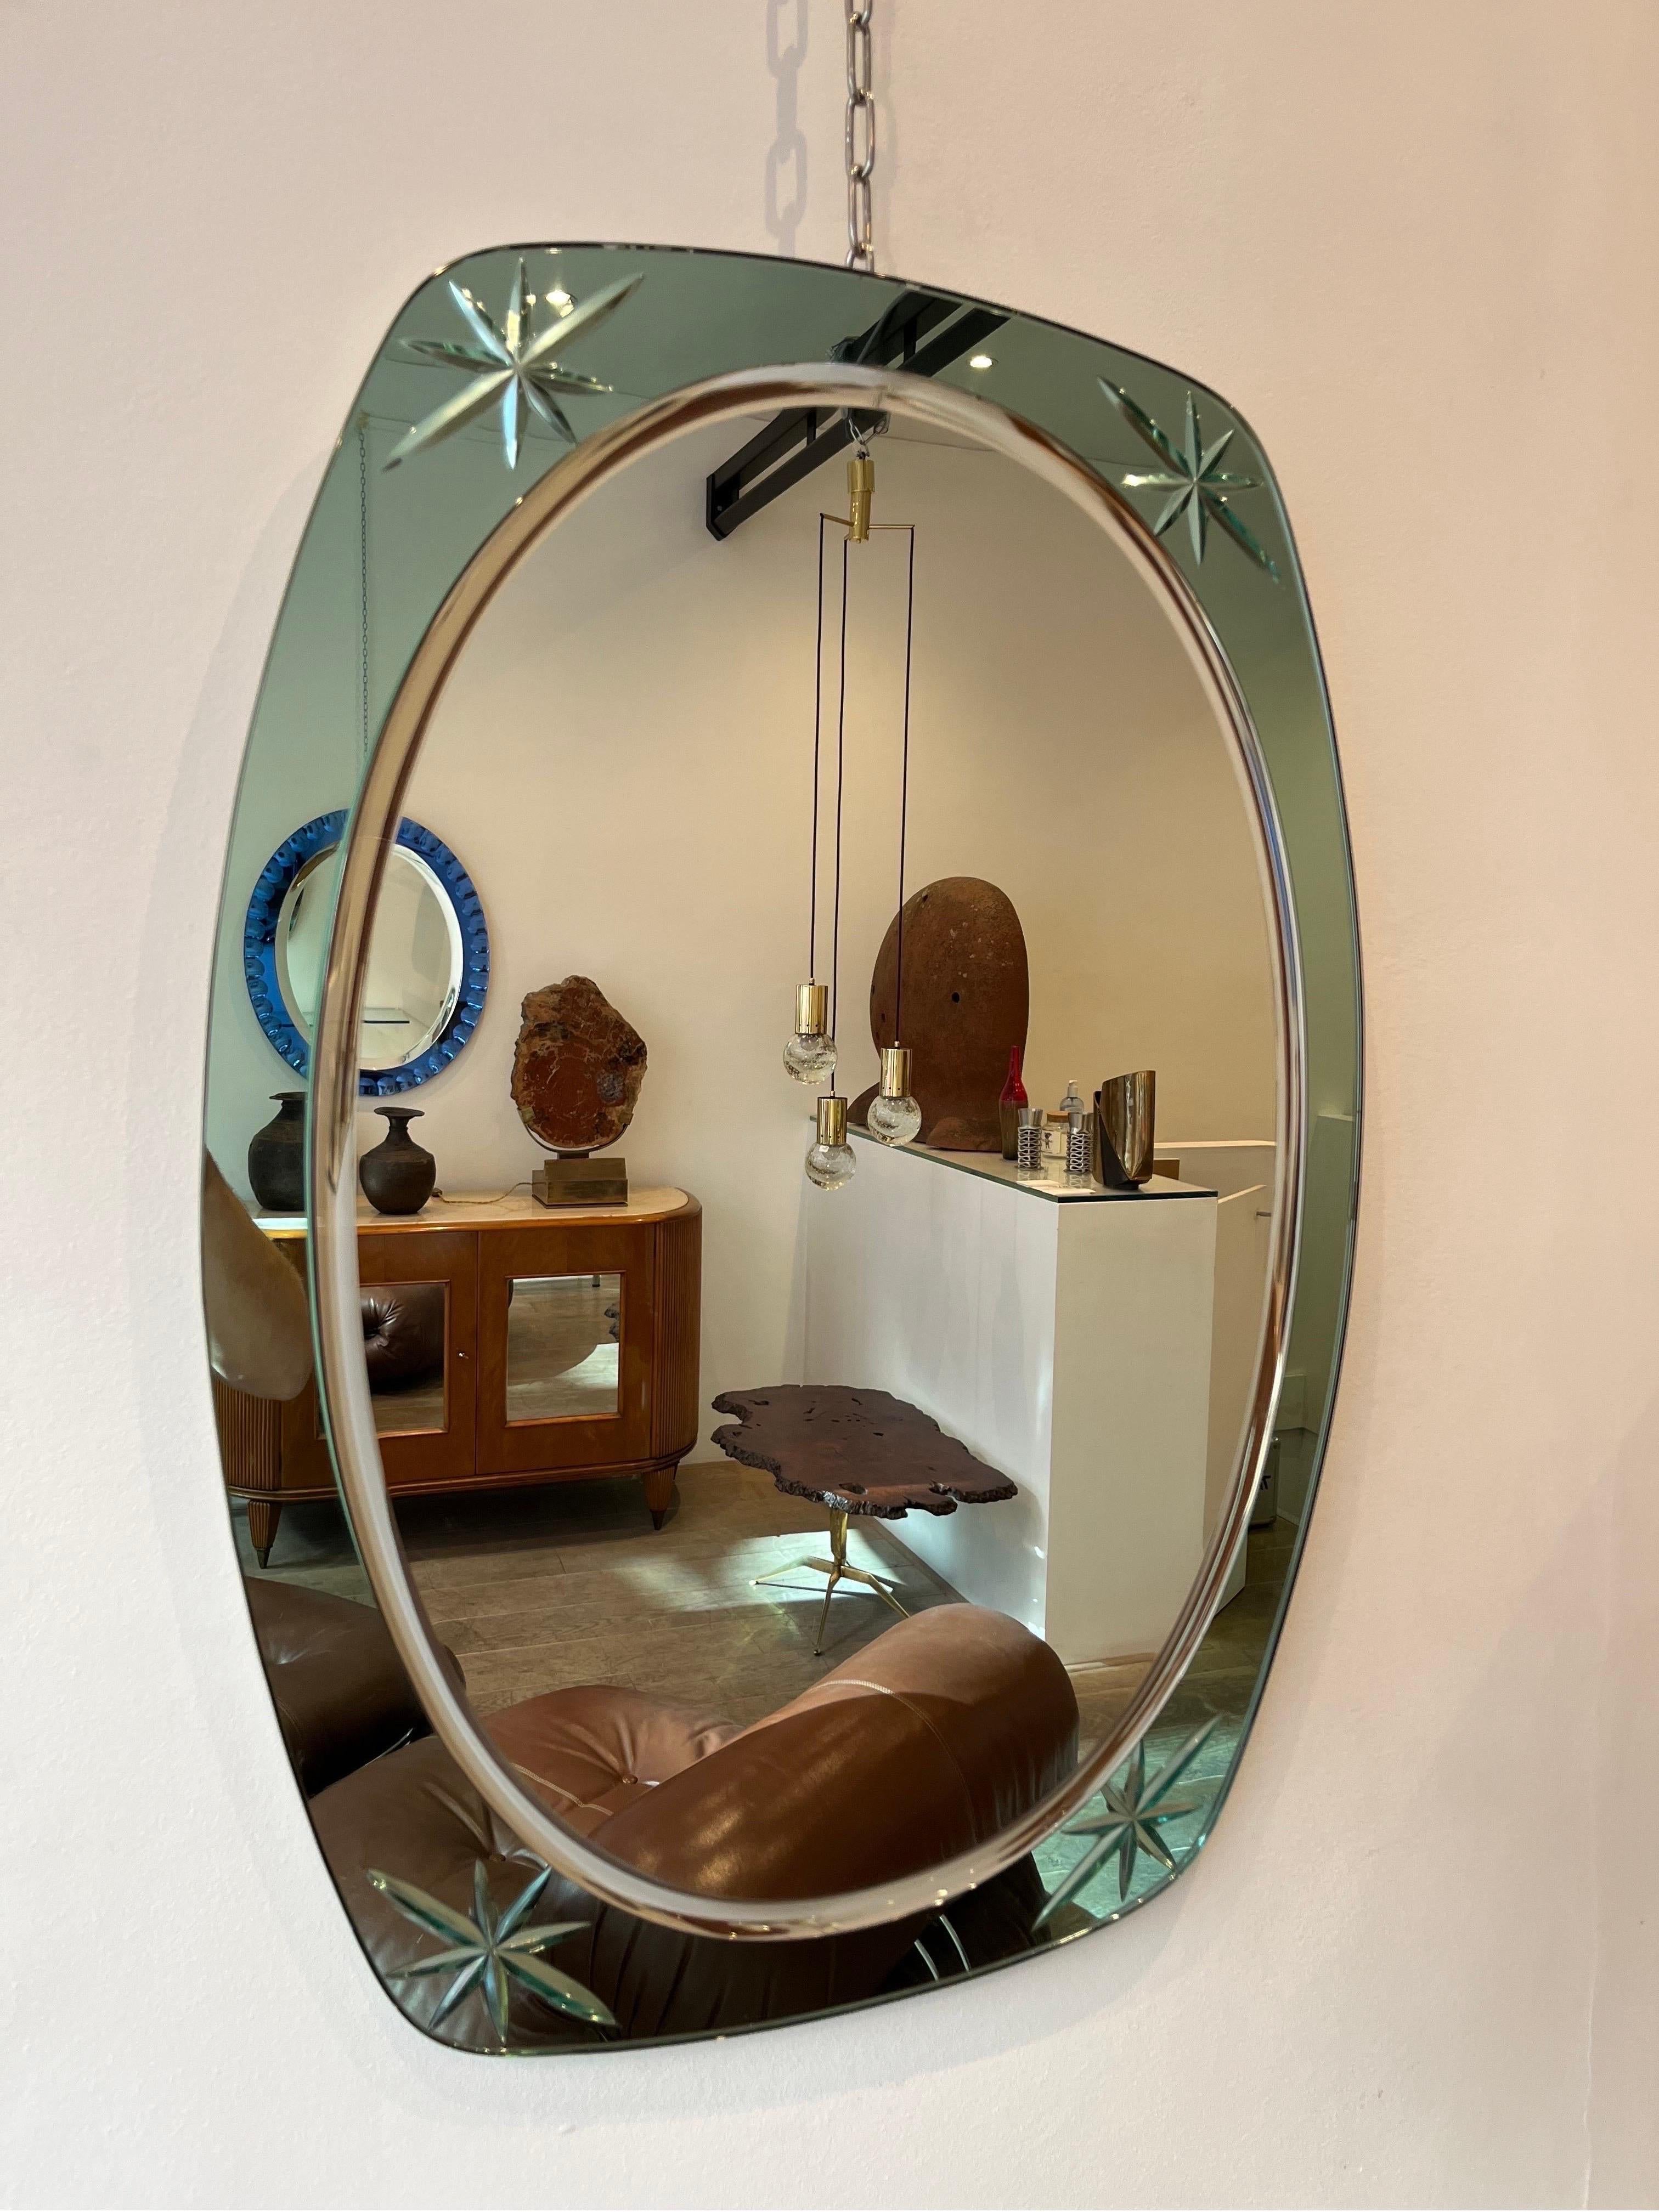 Cristal Arte est un fabricant de verre décoratif bien connu, établi à Turin en Italie. Il a atteint sa renommée dans les années 1950, lorsque la production de miroirs décoratifs était très créative avec des designs innovants. Le miroir actuel est de